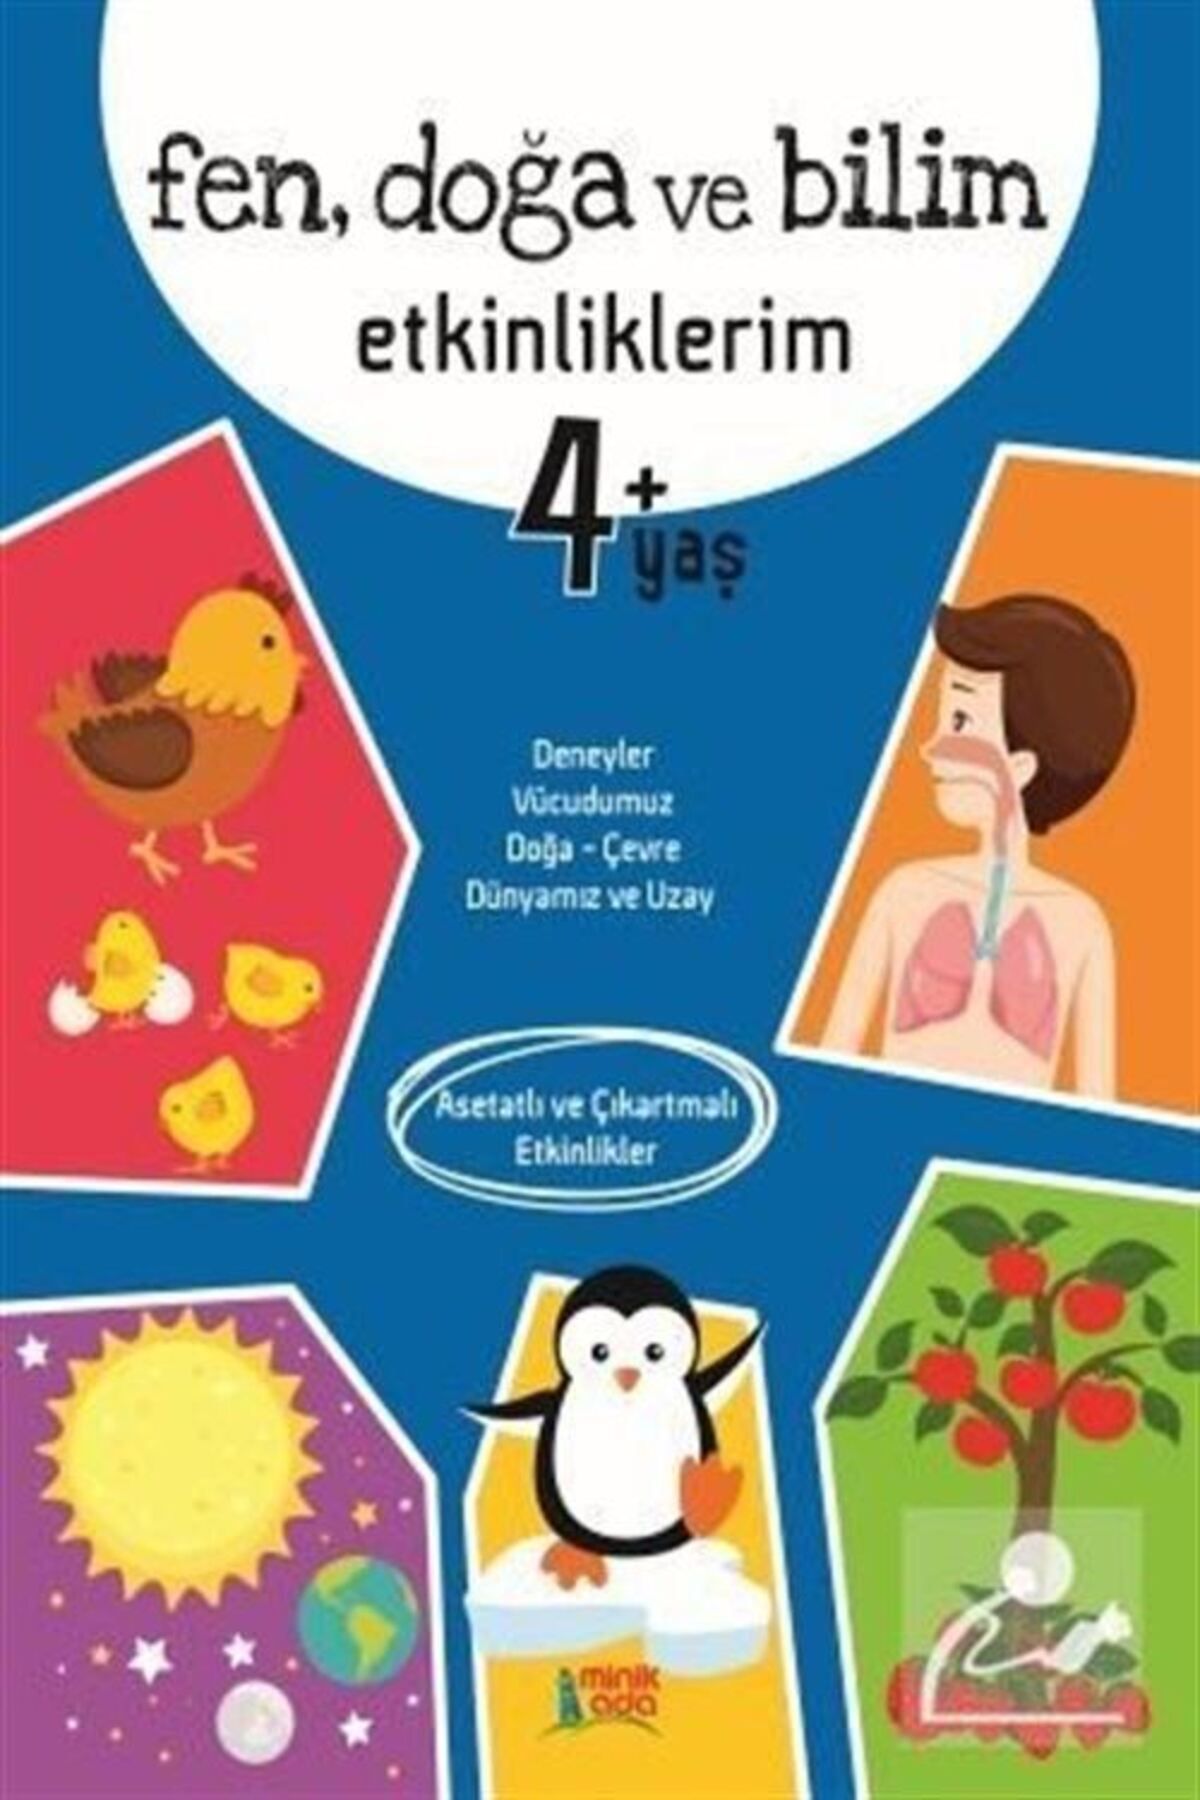 Genel Markalar Fen Doğa ve Bilim Etkinliklerim 4+Yaş kitabı / Kolektif / Minik Ada Yayınları